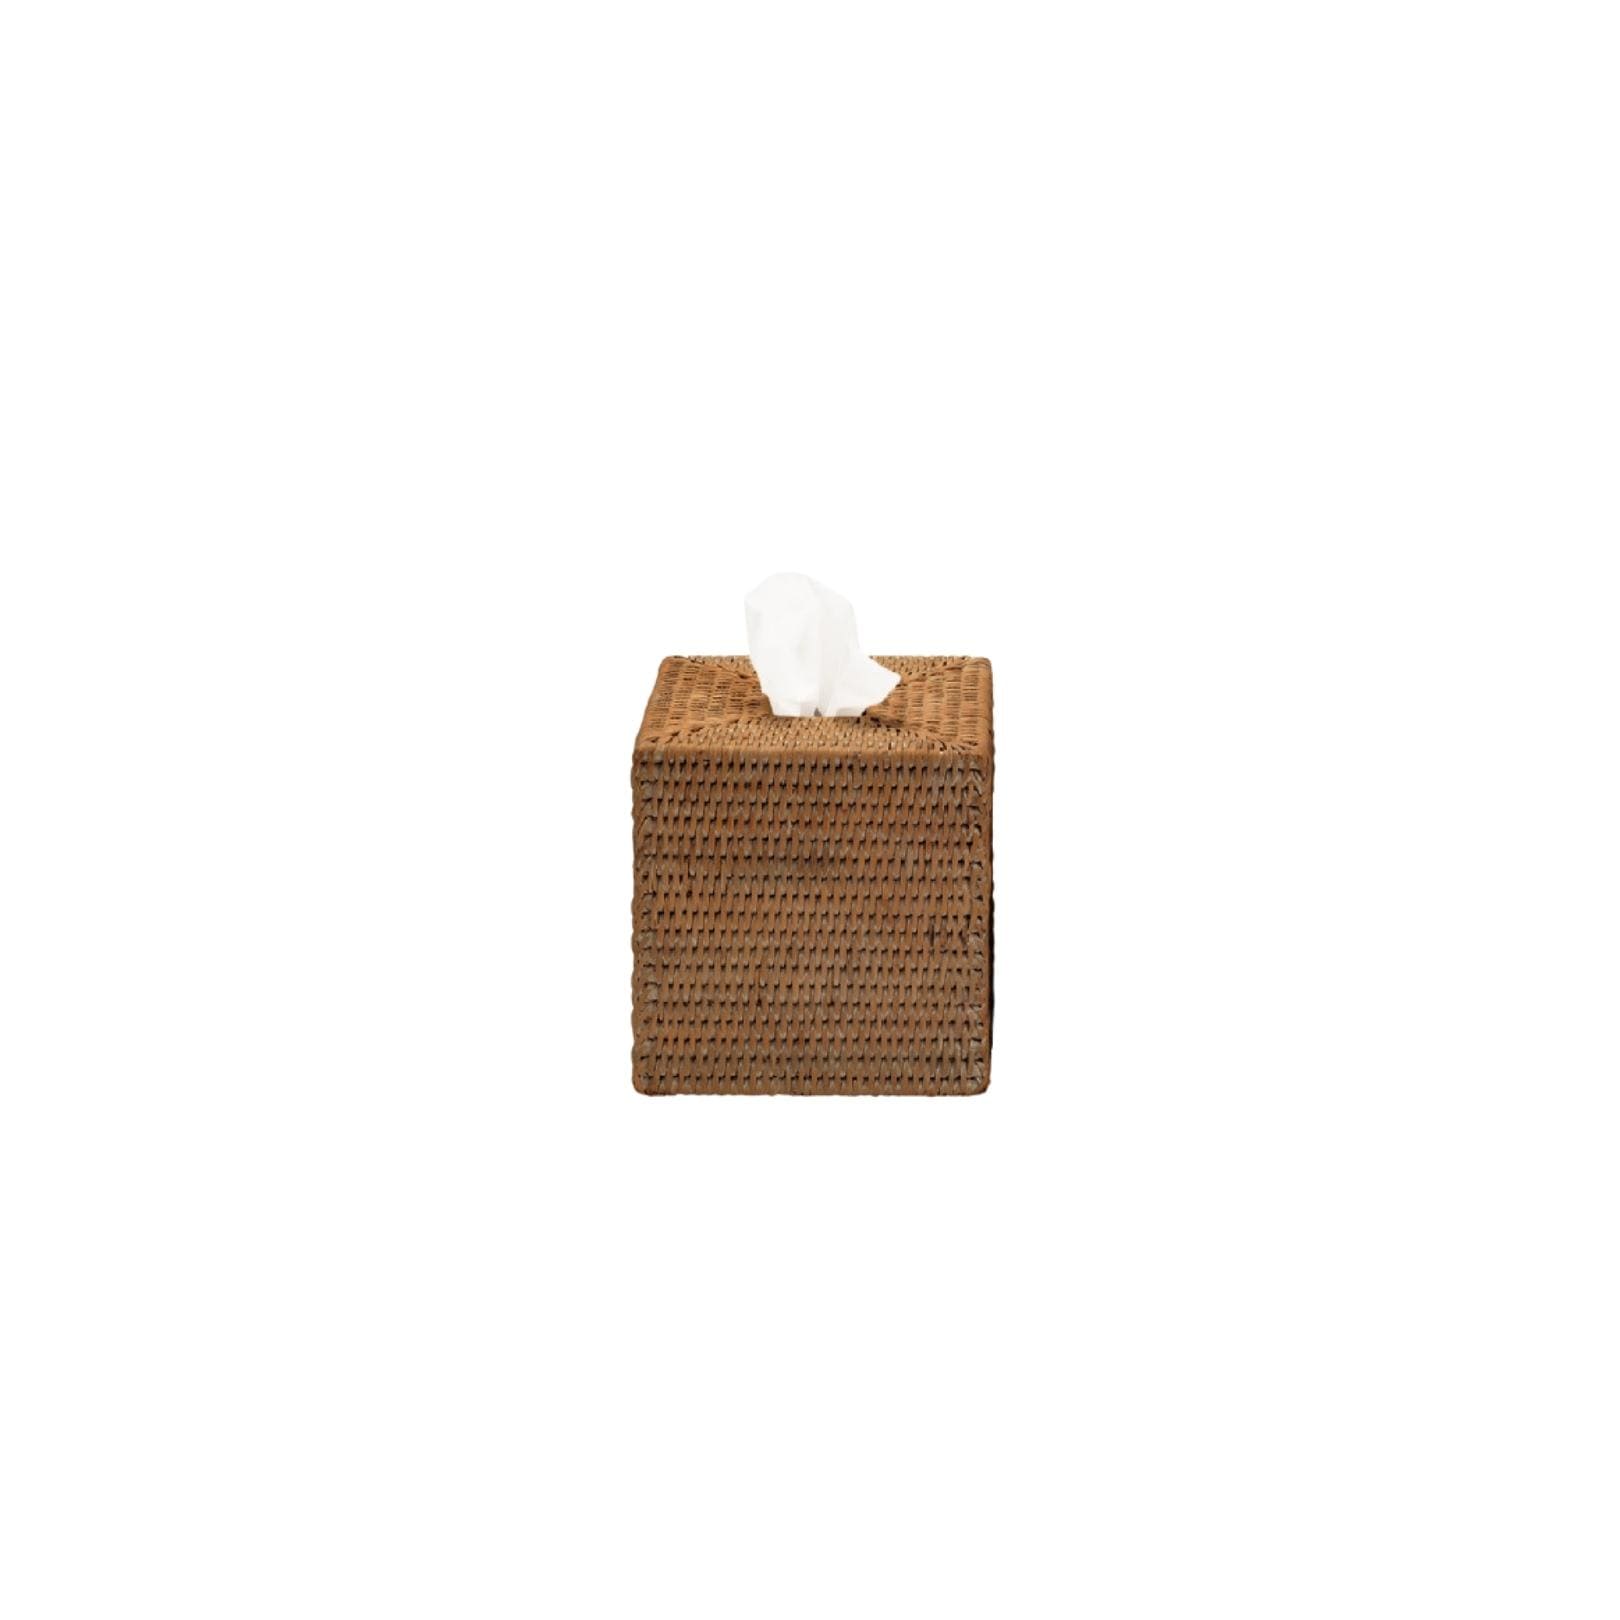 Tissue box square Rattan dark Basket Decor Walther